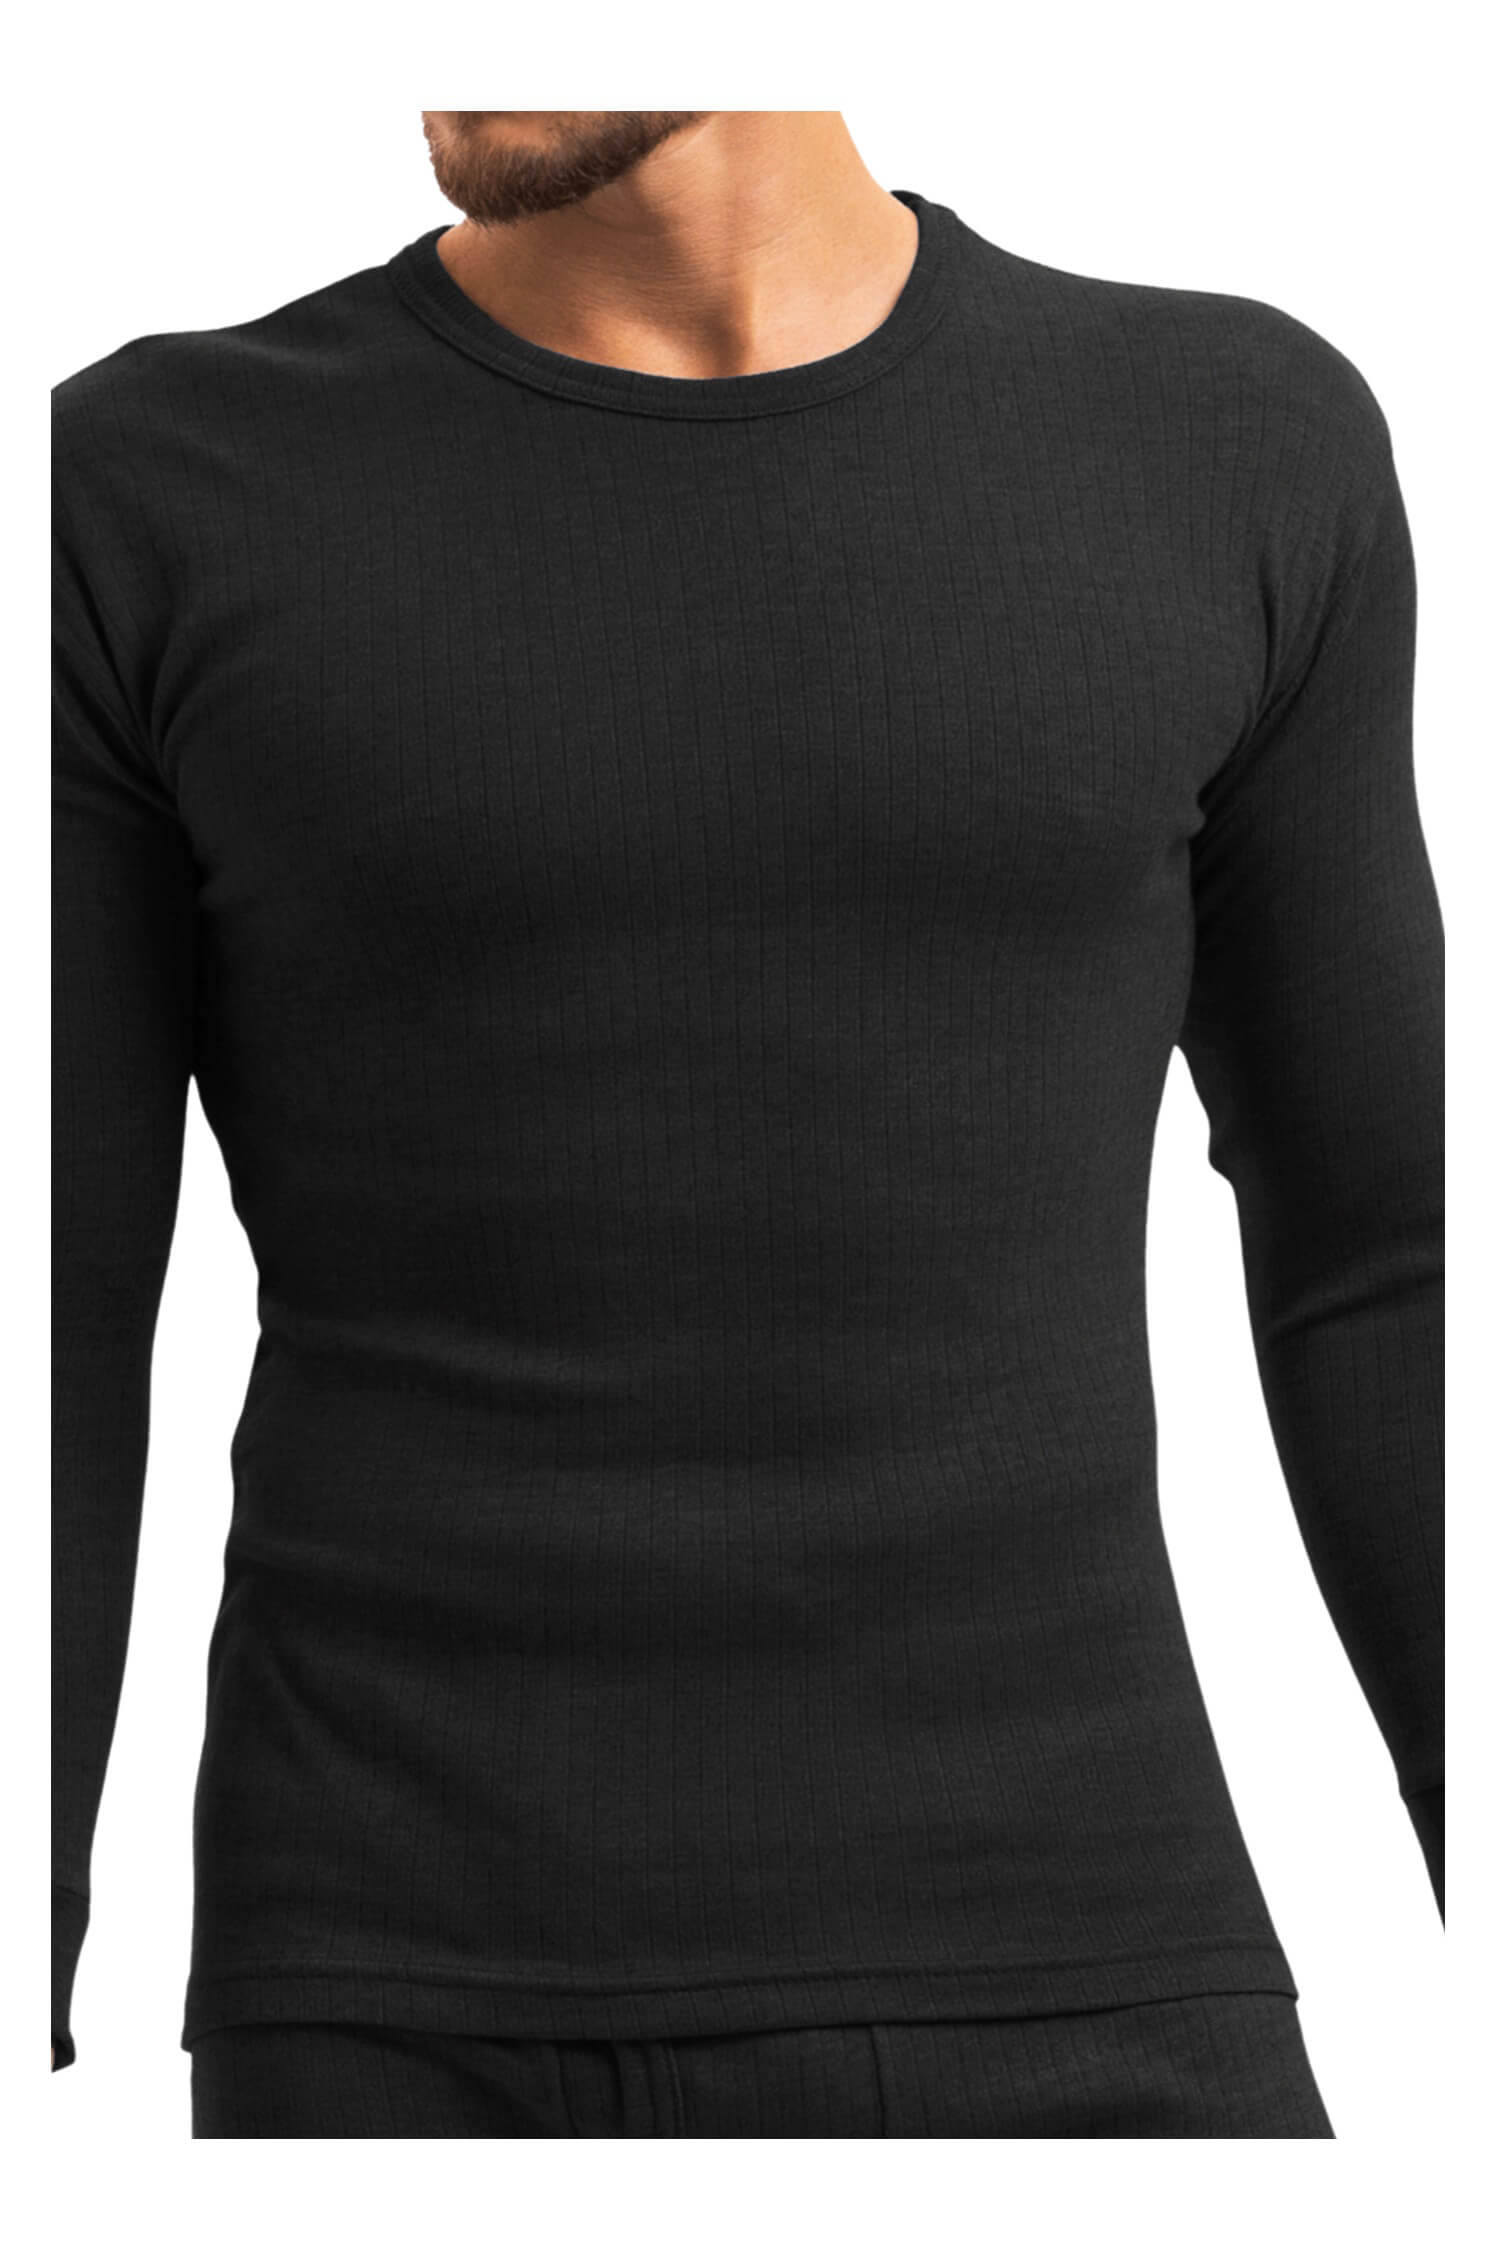 Braňo pánské thermo tričko 256 XL černá